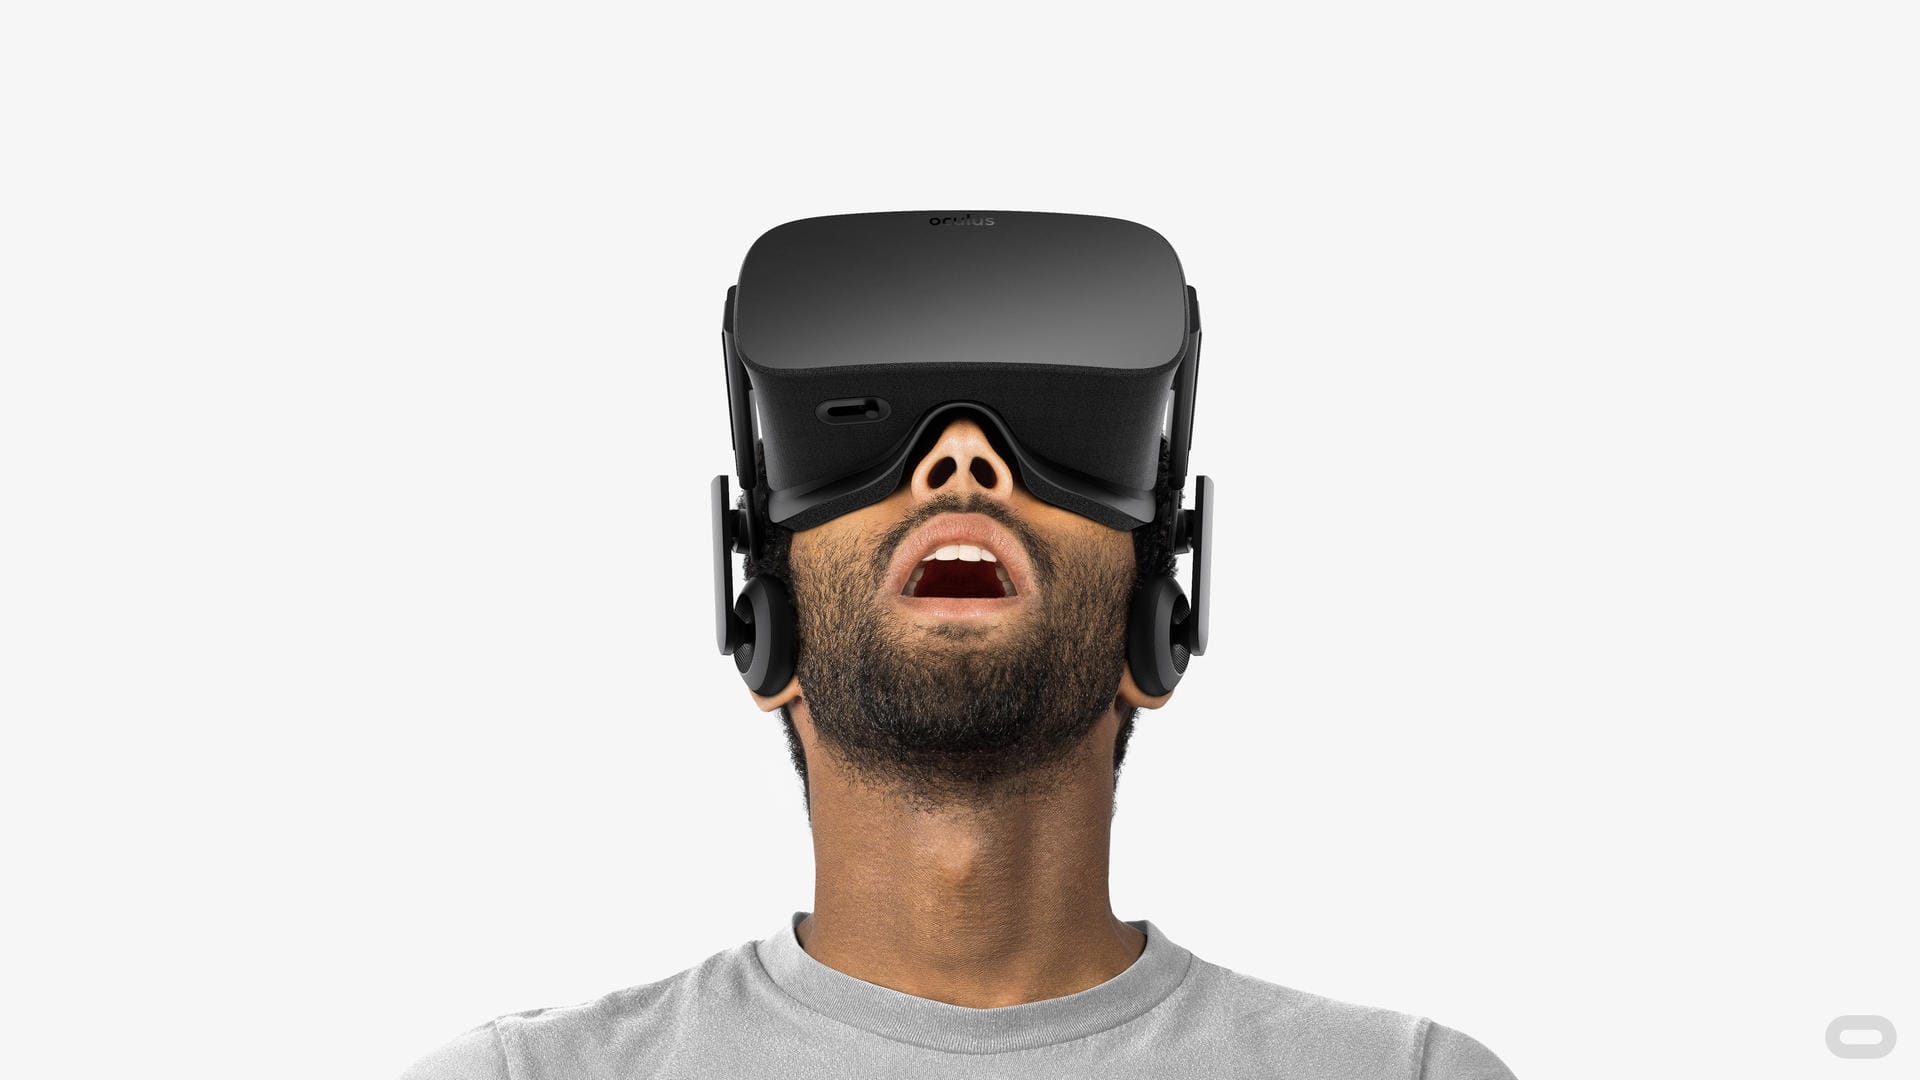 Mit leistungsstarken VR-Brillen wie der Oculus Rift für etwa 700 Euro kommt Gaming aufs nächste Level.